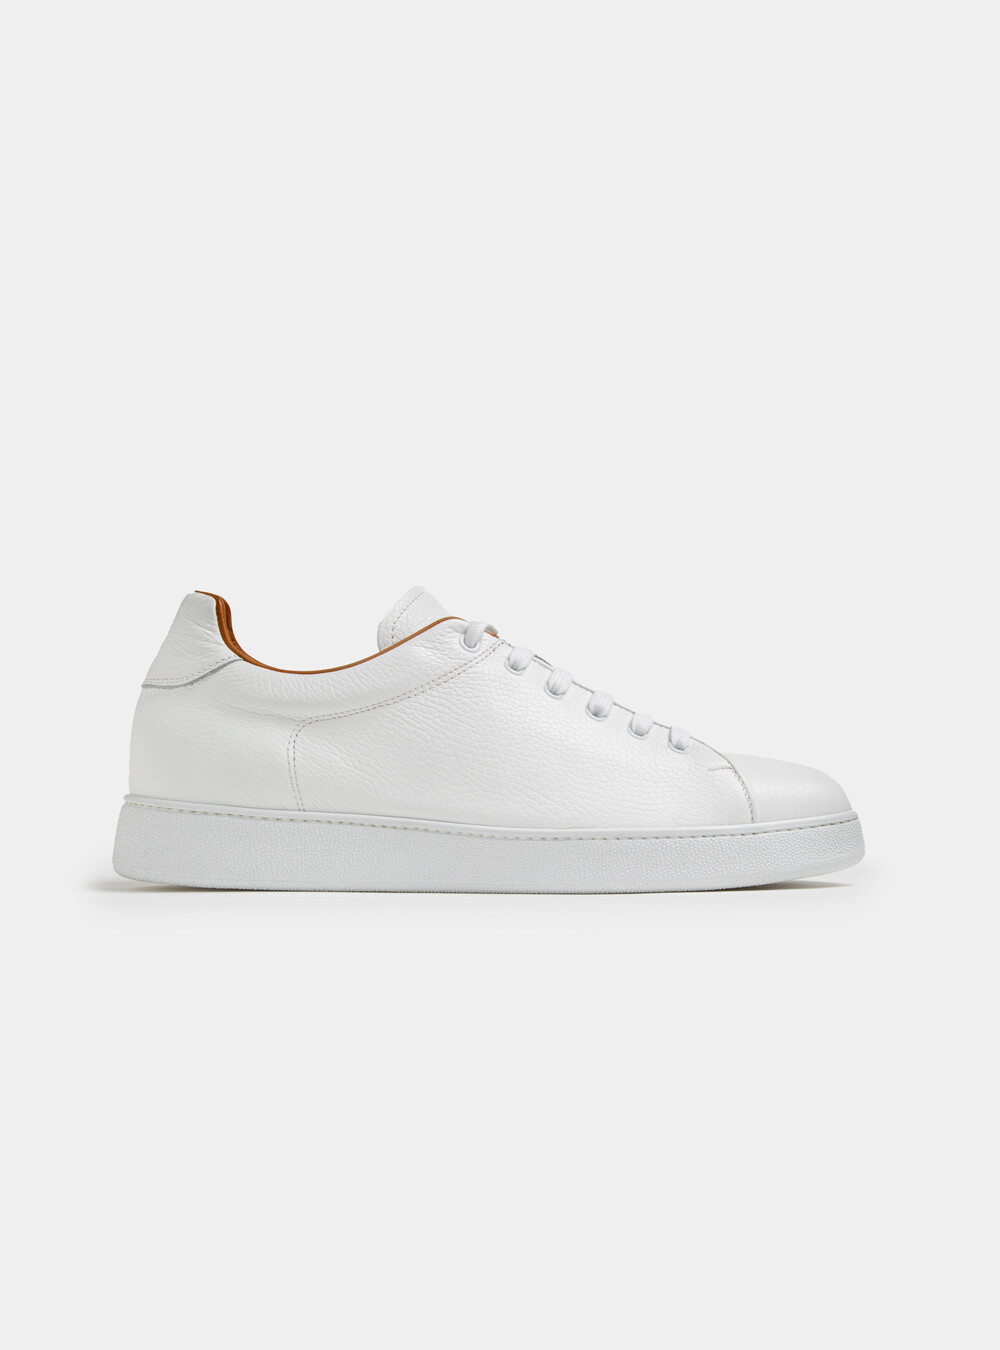 Zapatillas de piel granulada blanca | GutteridgeEU | Sneakers Uomo